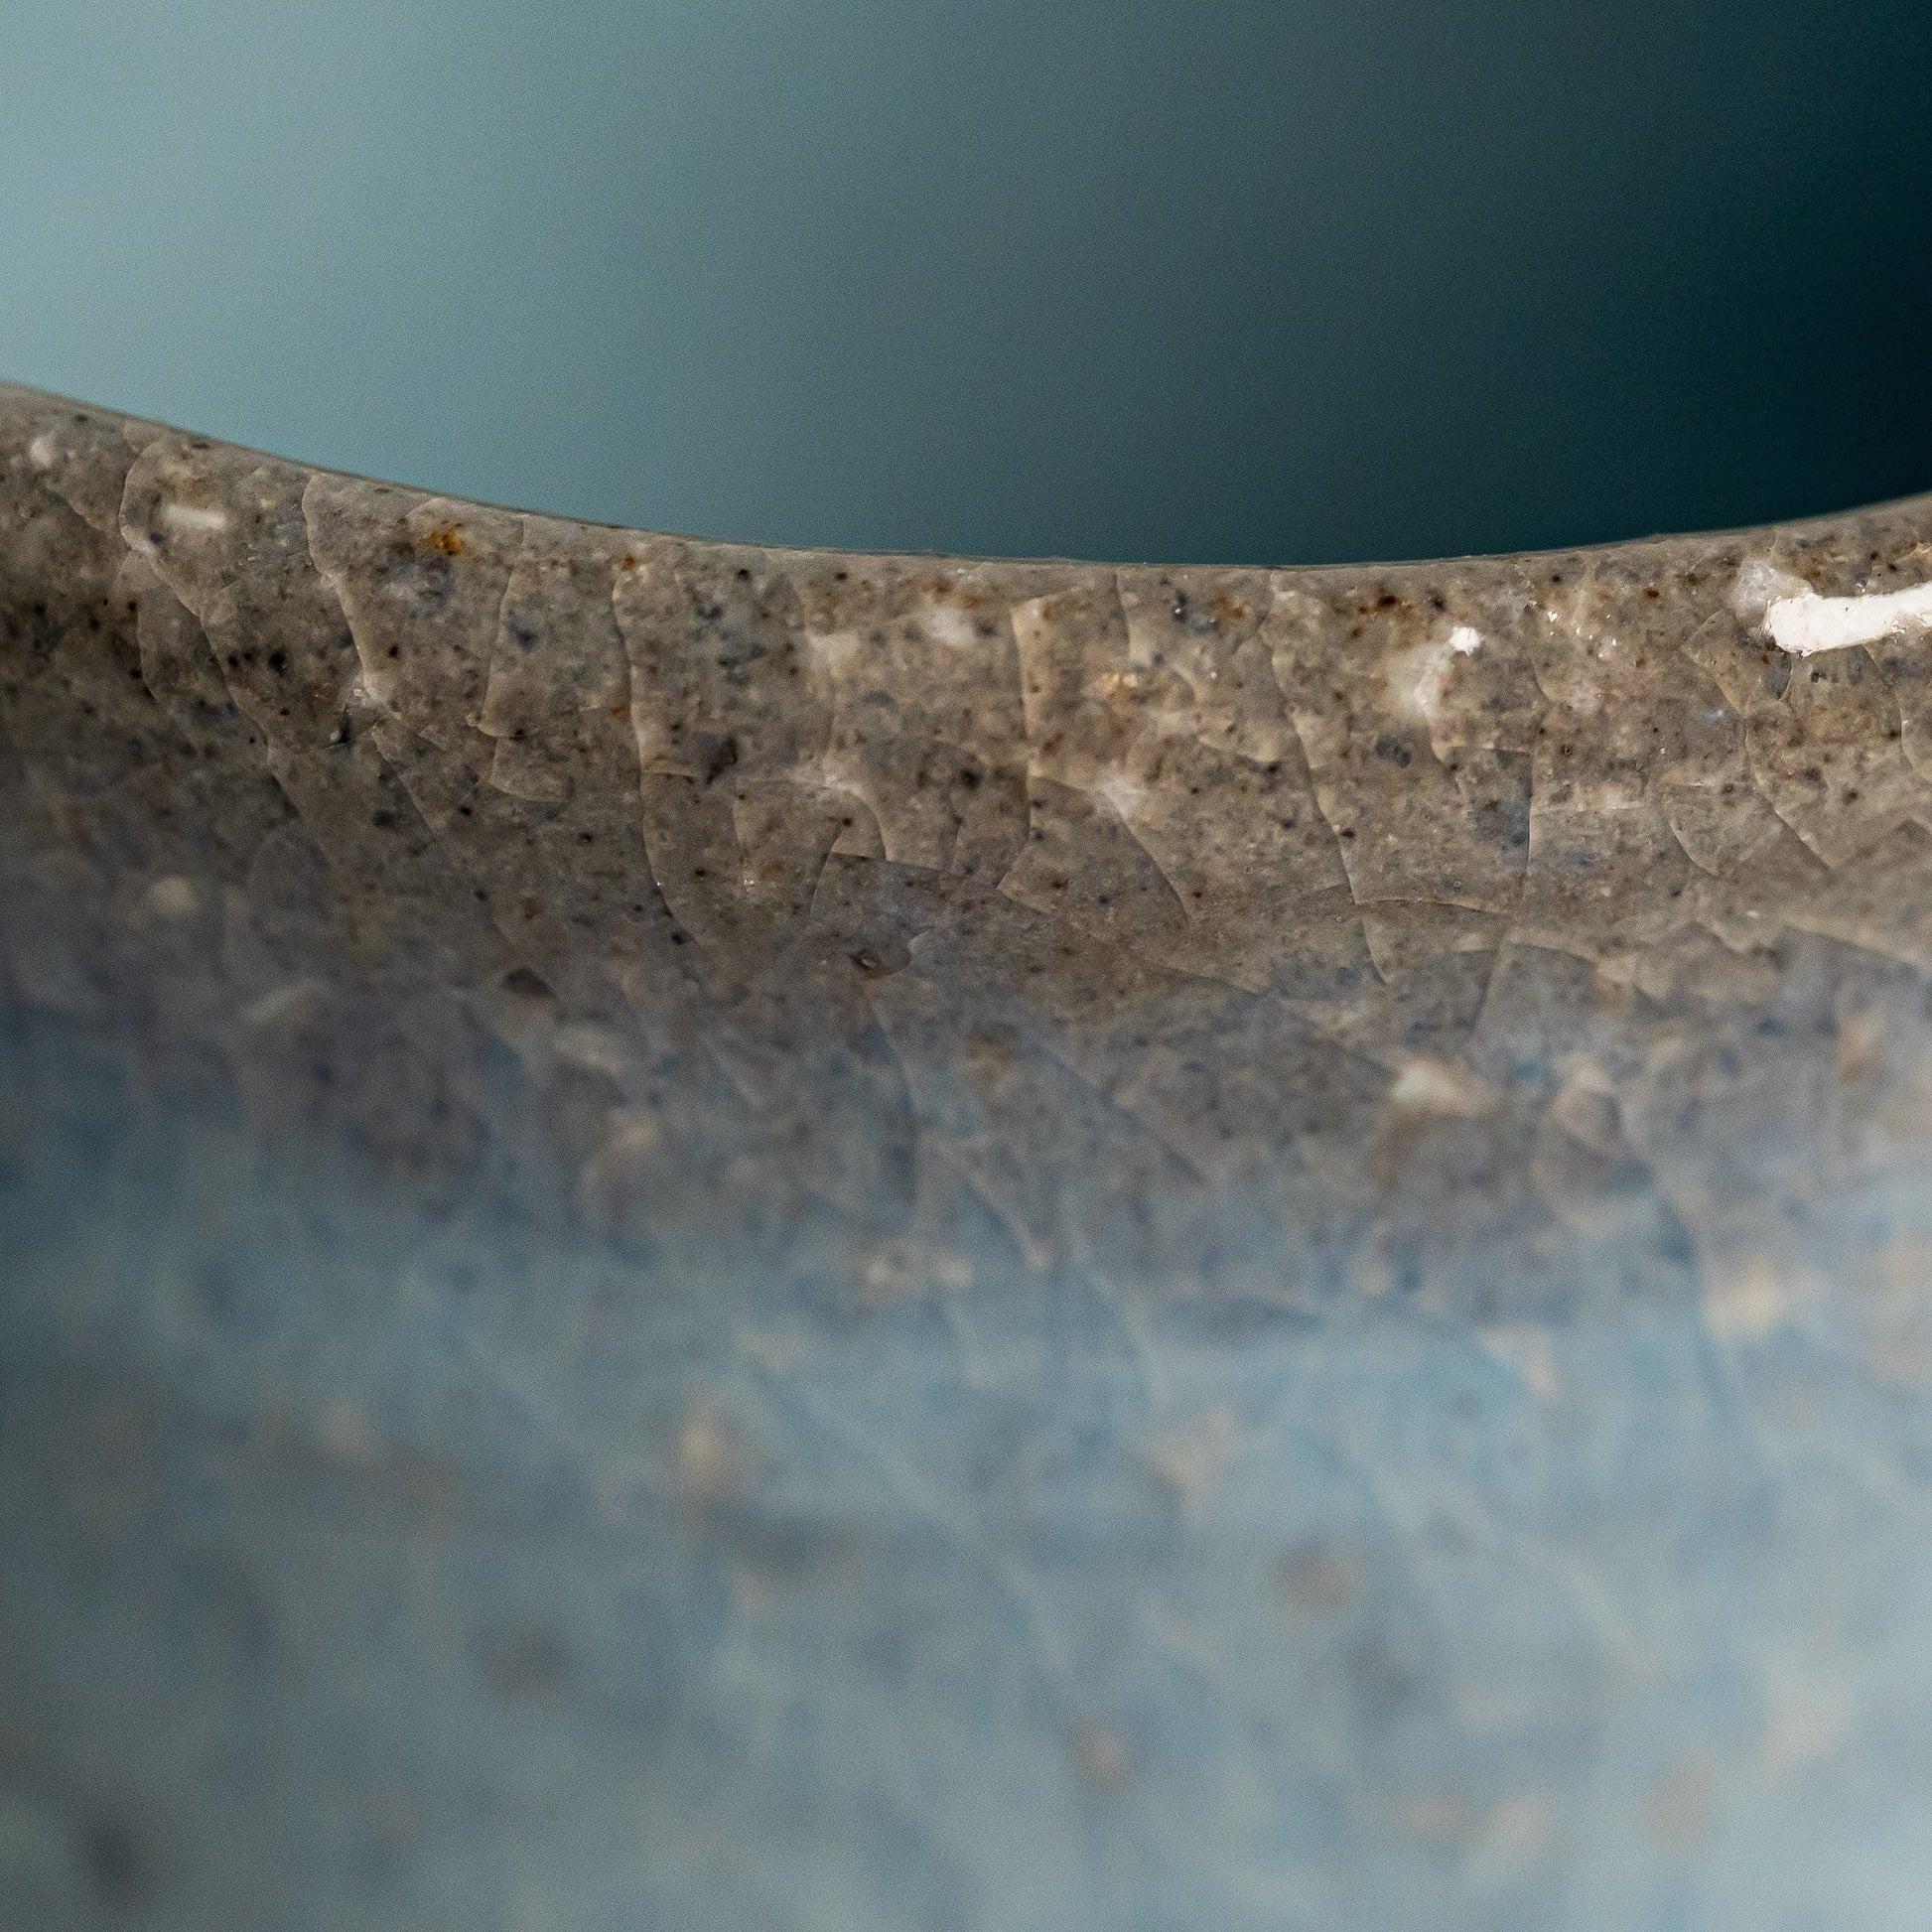 A close up of a blue Hagi yaki teacup 